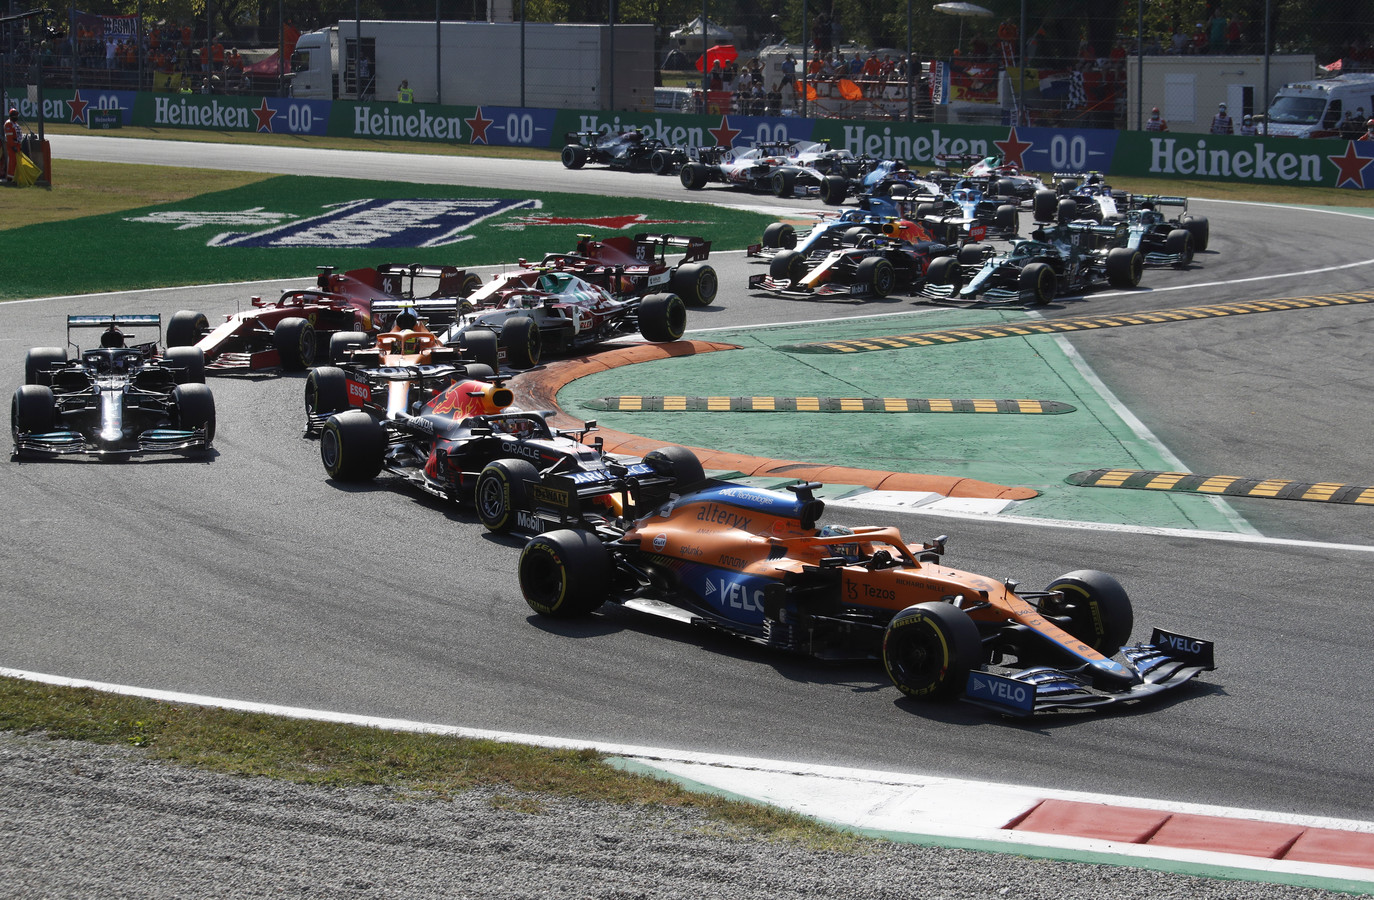 Een beeld uit de race van afgelopen weekeinde, waar Daniel Ricciardo uiteindelijk de Grand Prix van Italië won.